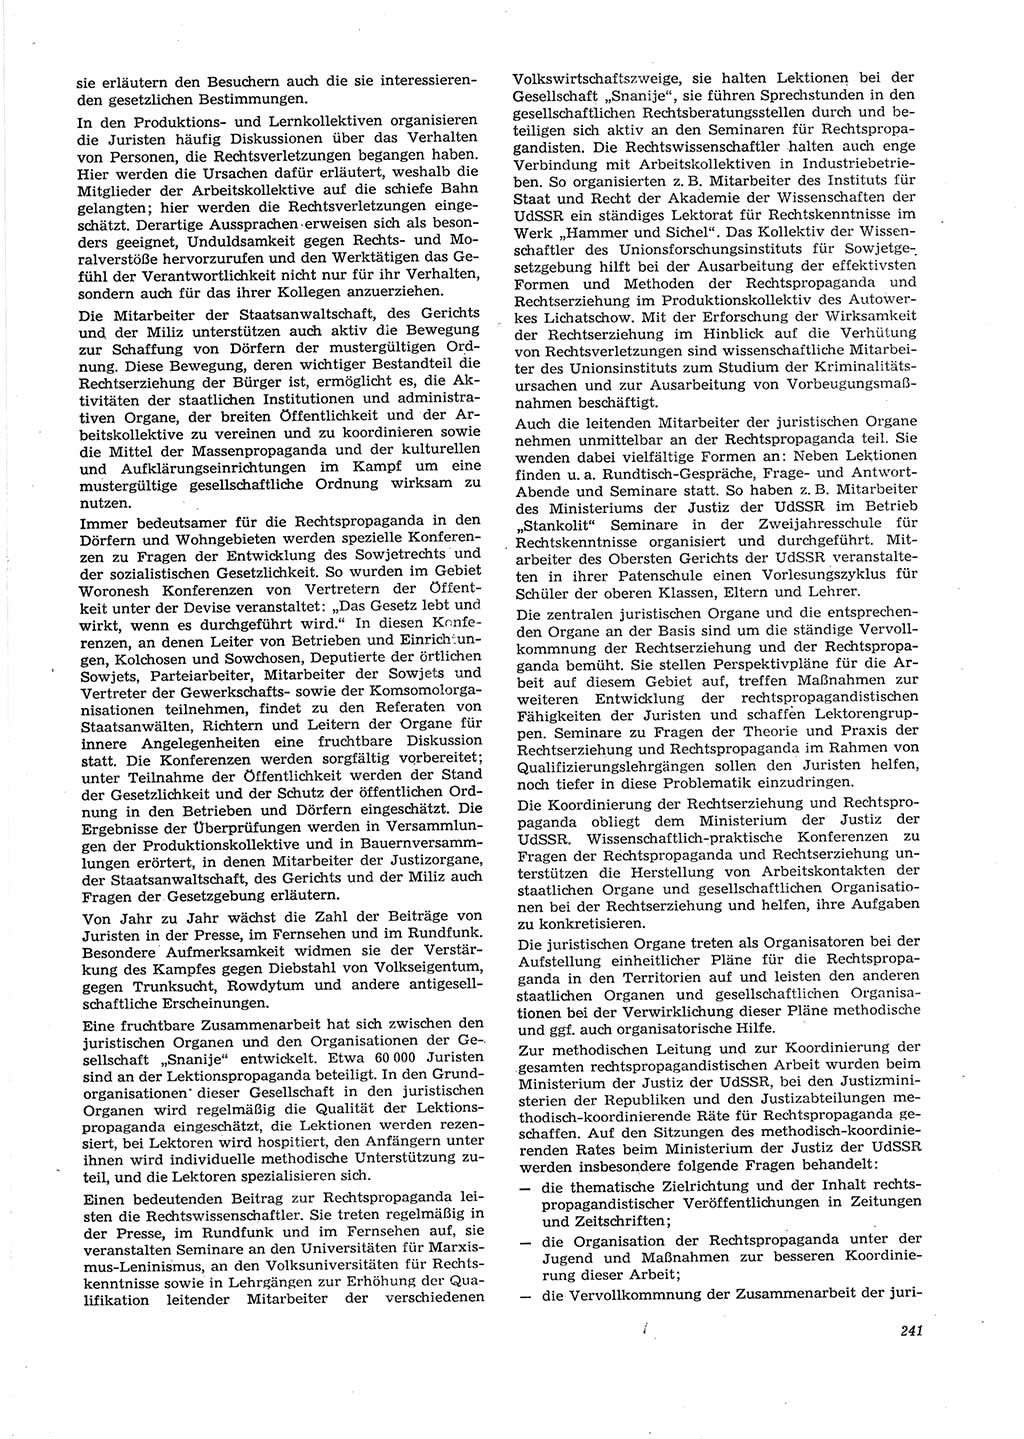 Neue Justiz (NJ), Zeitschrift für Recht und Rechtswissenschaft [Deutsche Demokratische Republik (DDR)], 29. Jahrgang 1975, Seite 241 (NJ DDR 1975, S. 241)